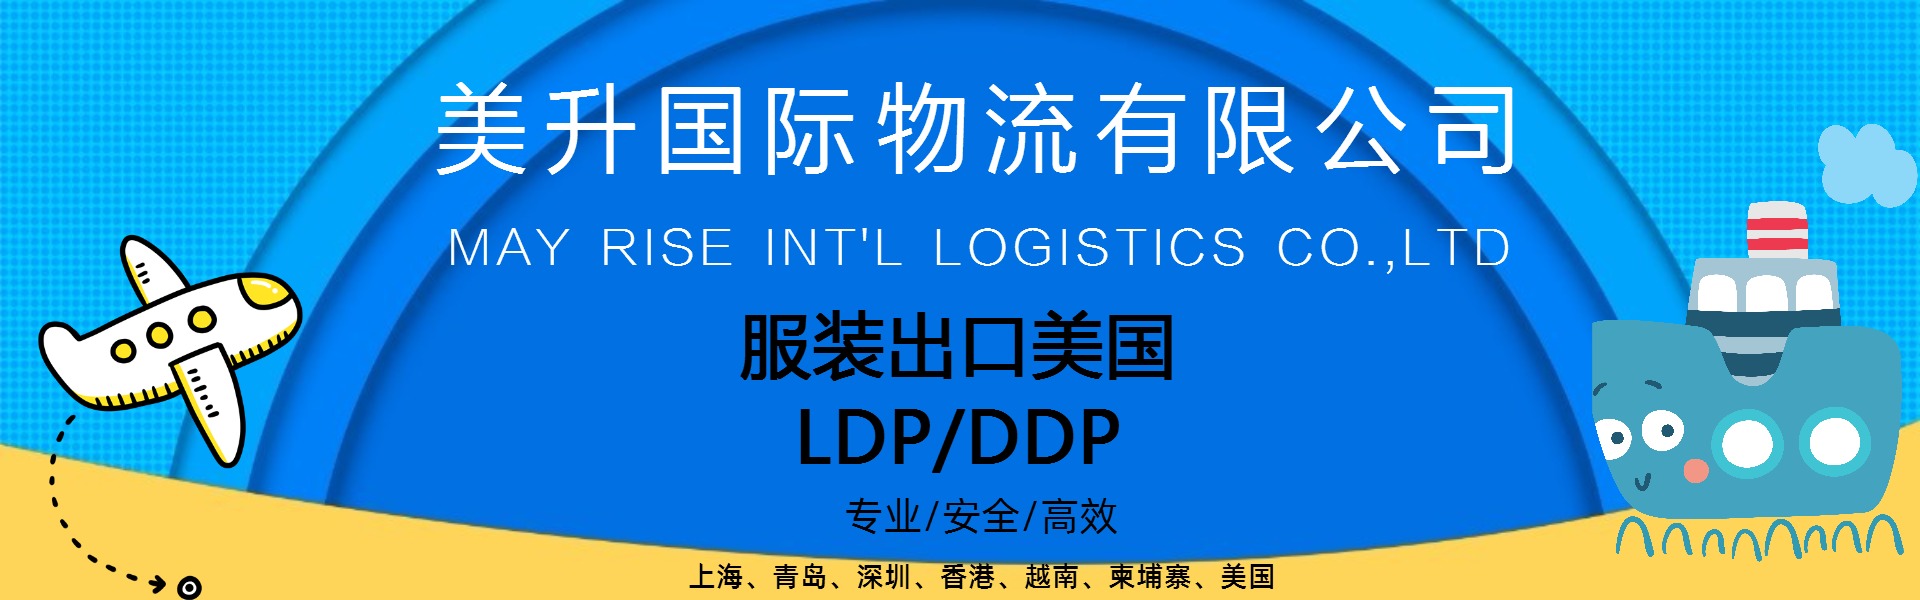 美国LDP DDP货代 服装纺织品类 优势线路